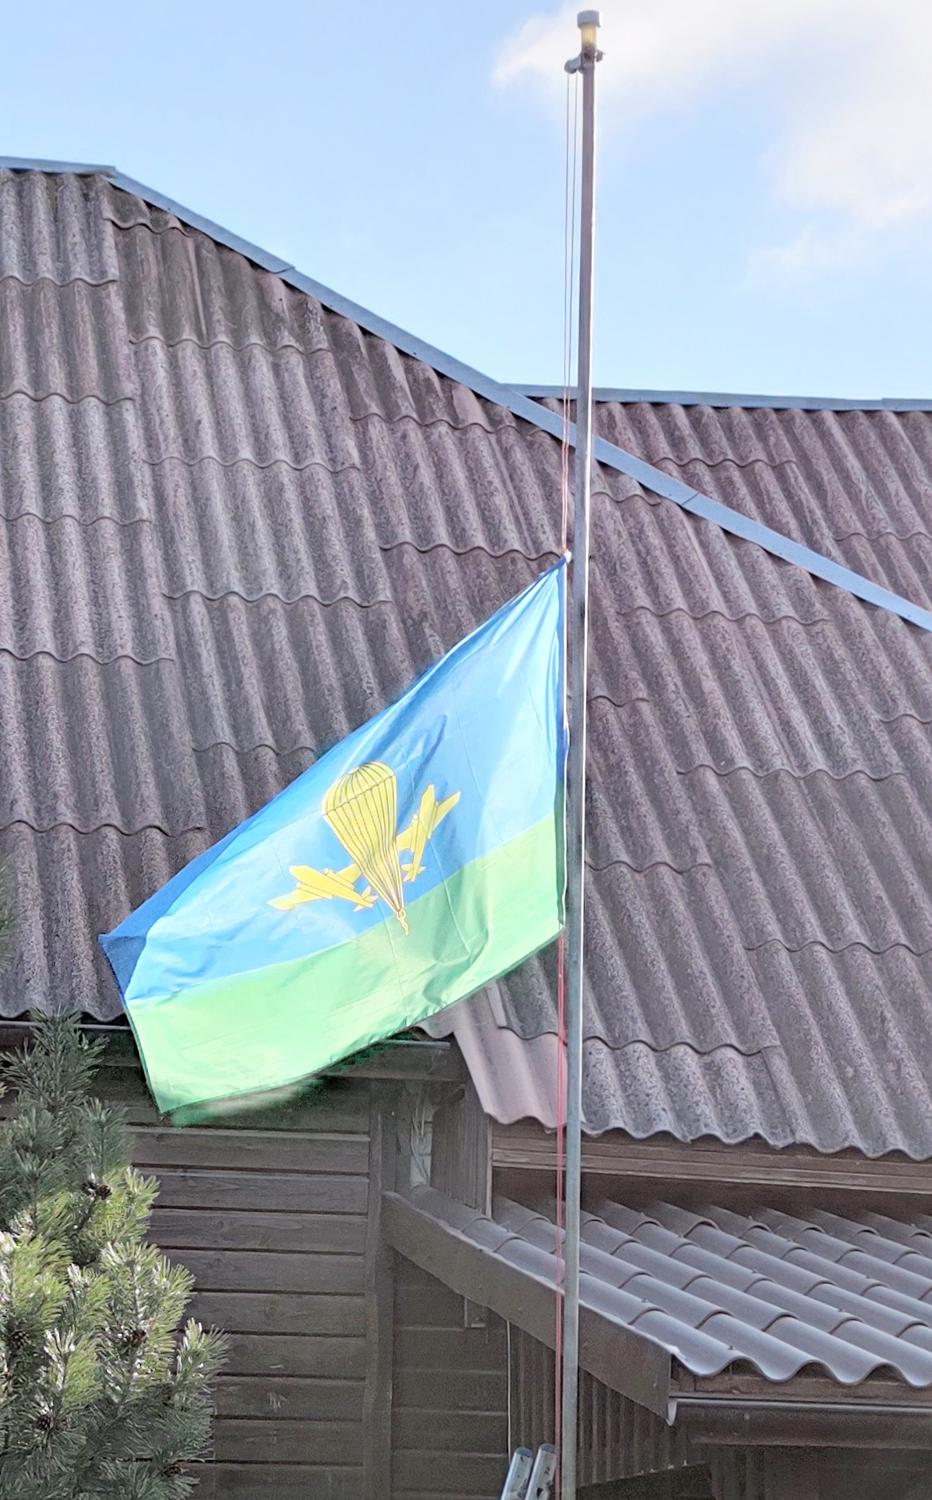 Ukmergėje suplazdėjo rusų oro desanto vėliava / Ką reiškia ši prie namo plevėsuojanti vėliava?